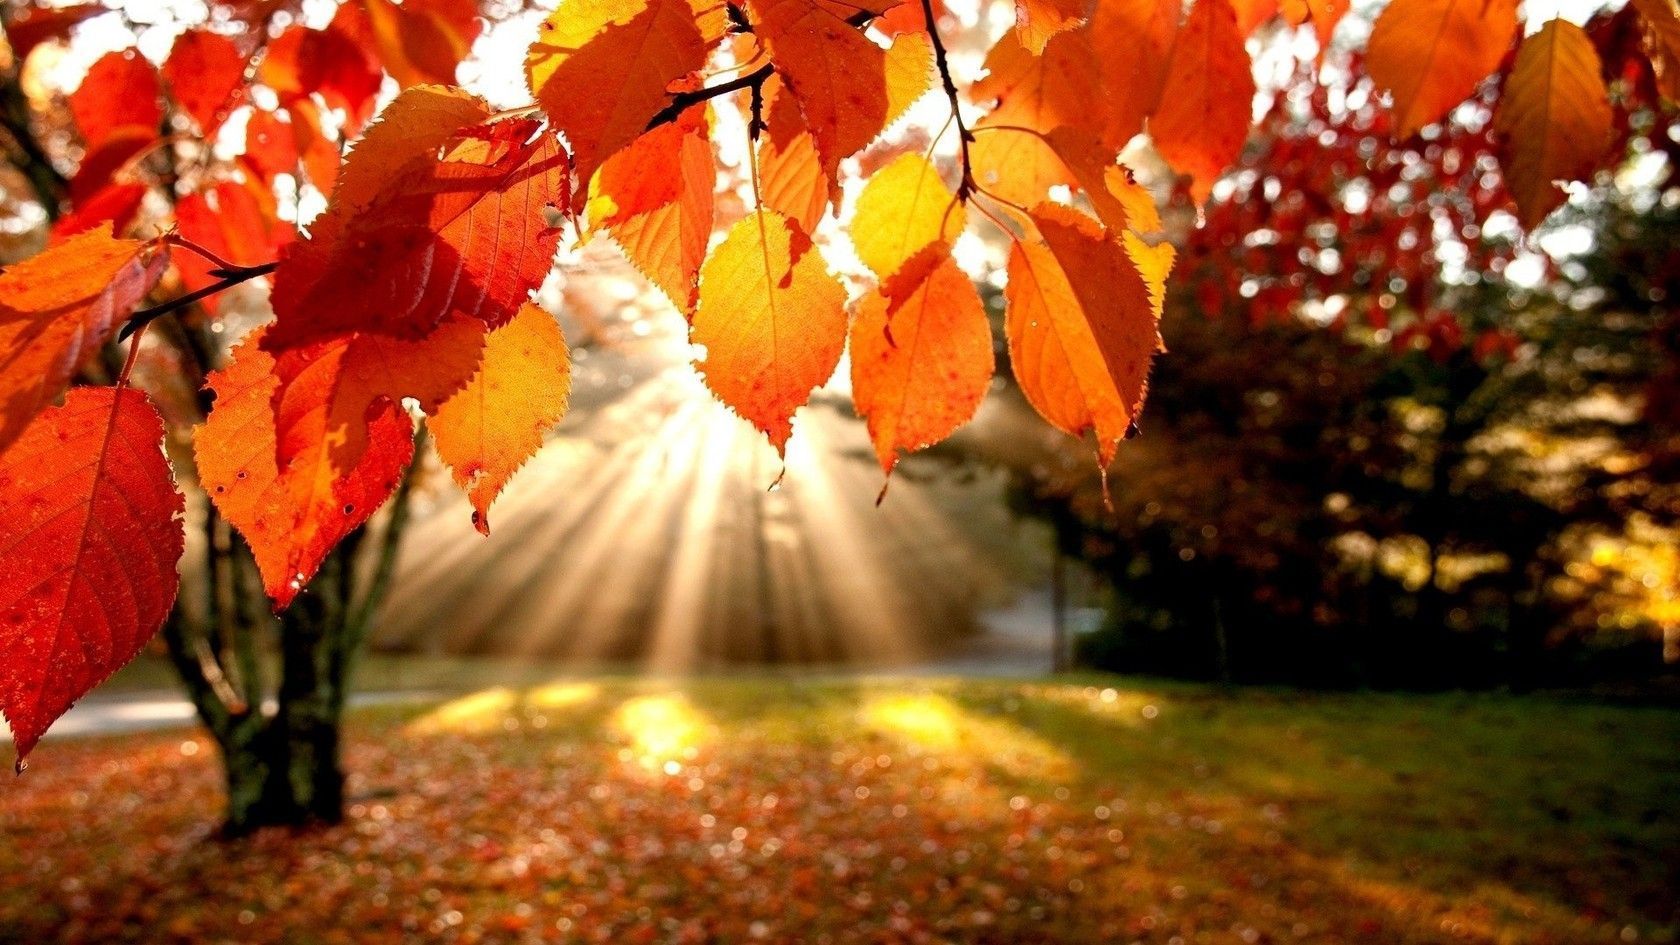 Autumn season image